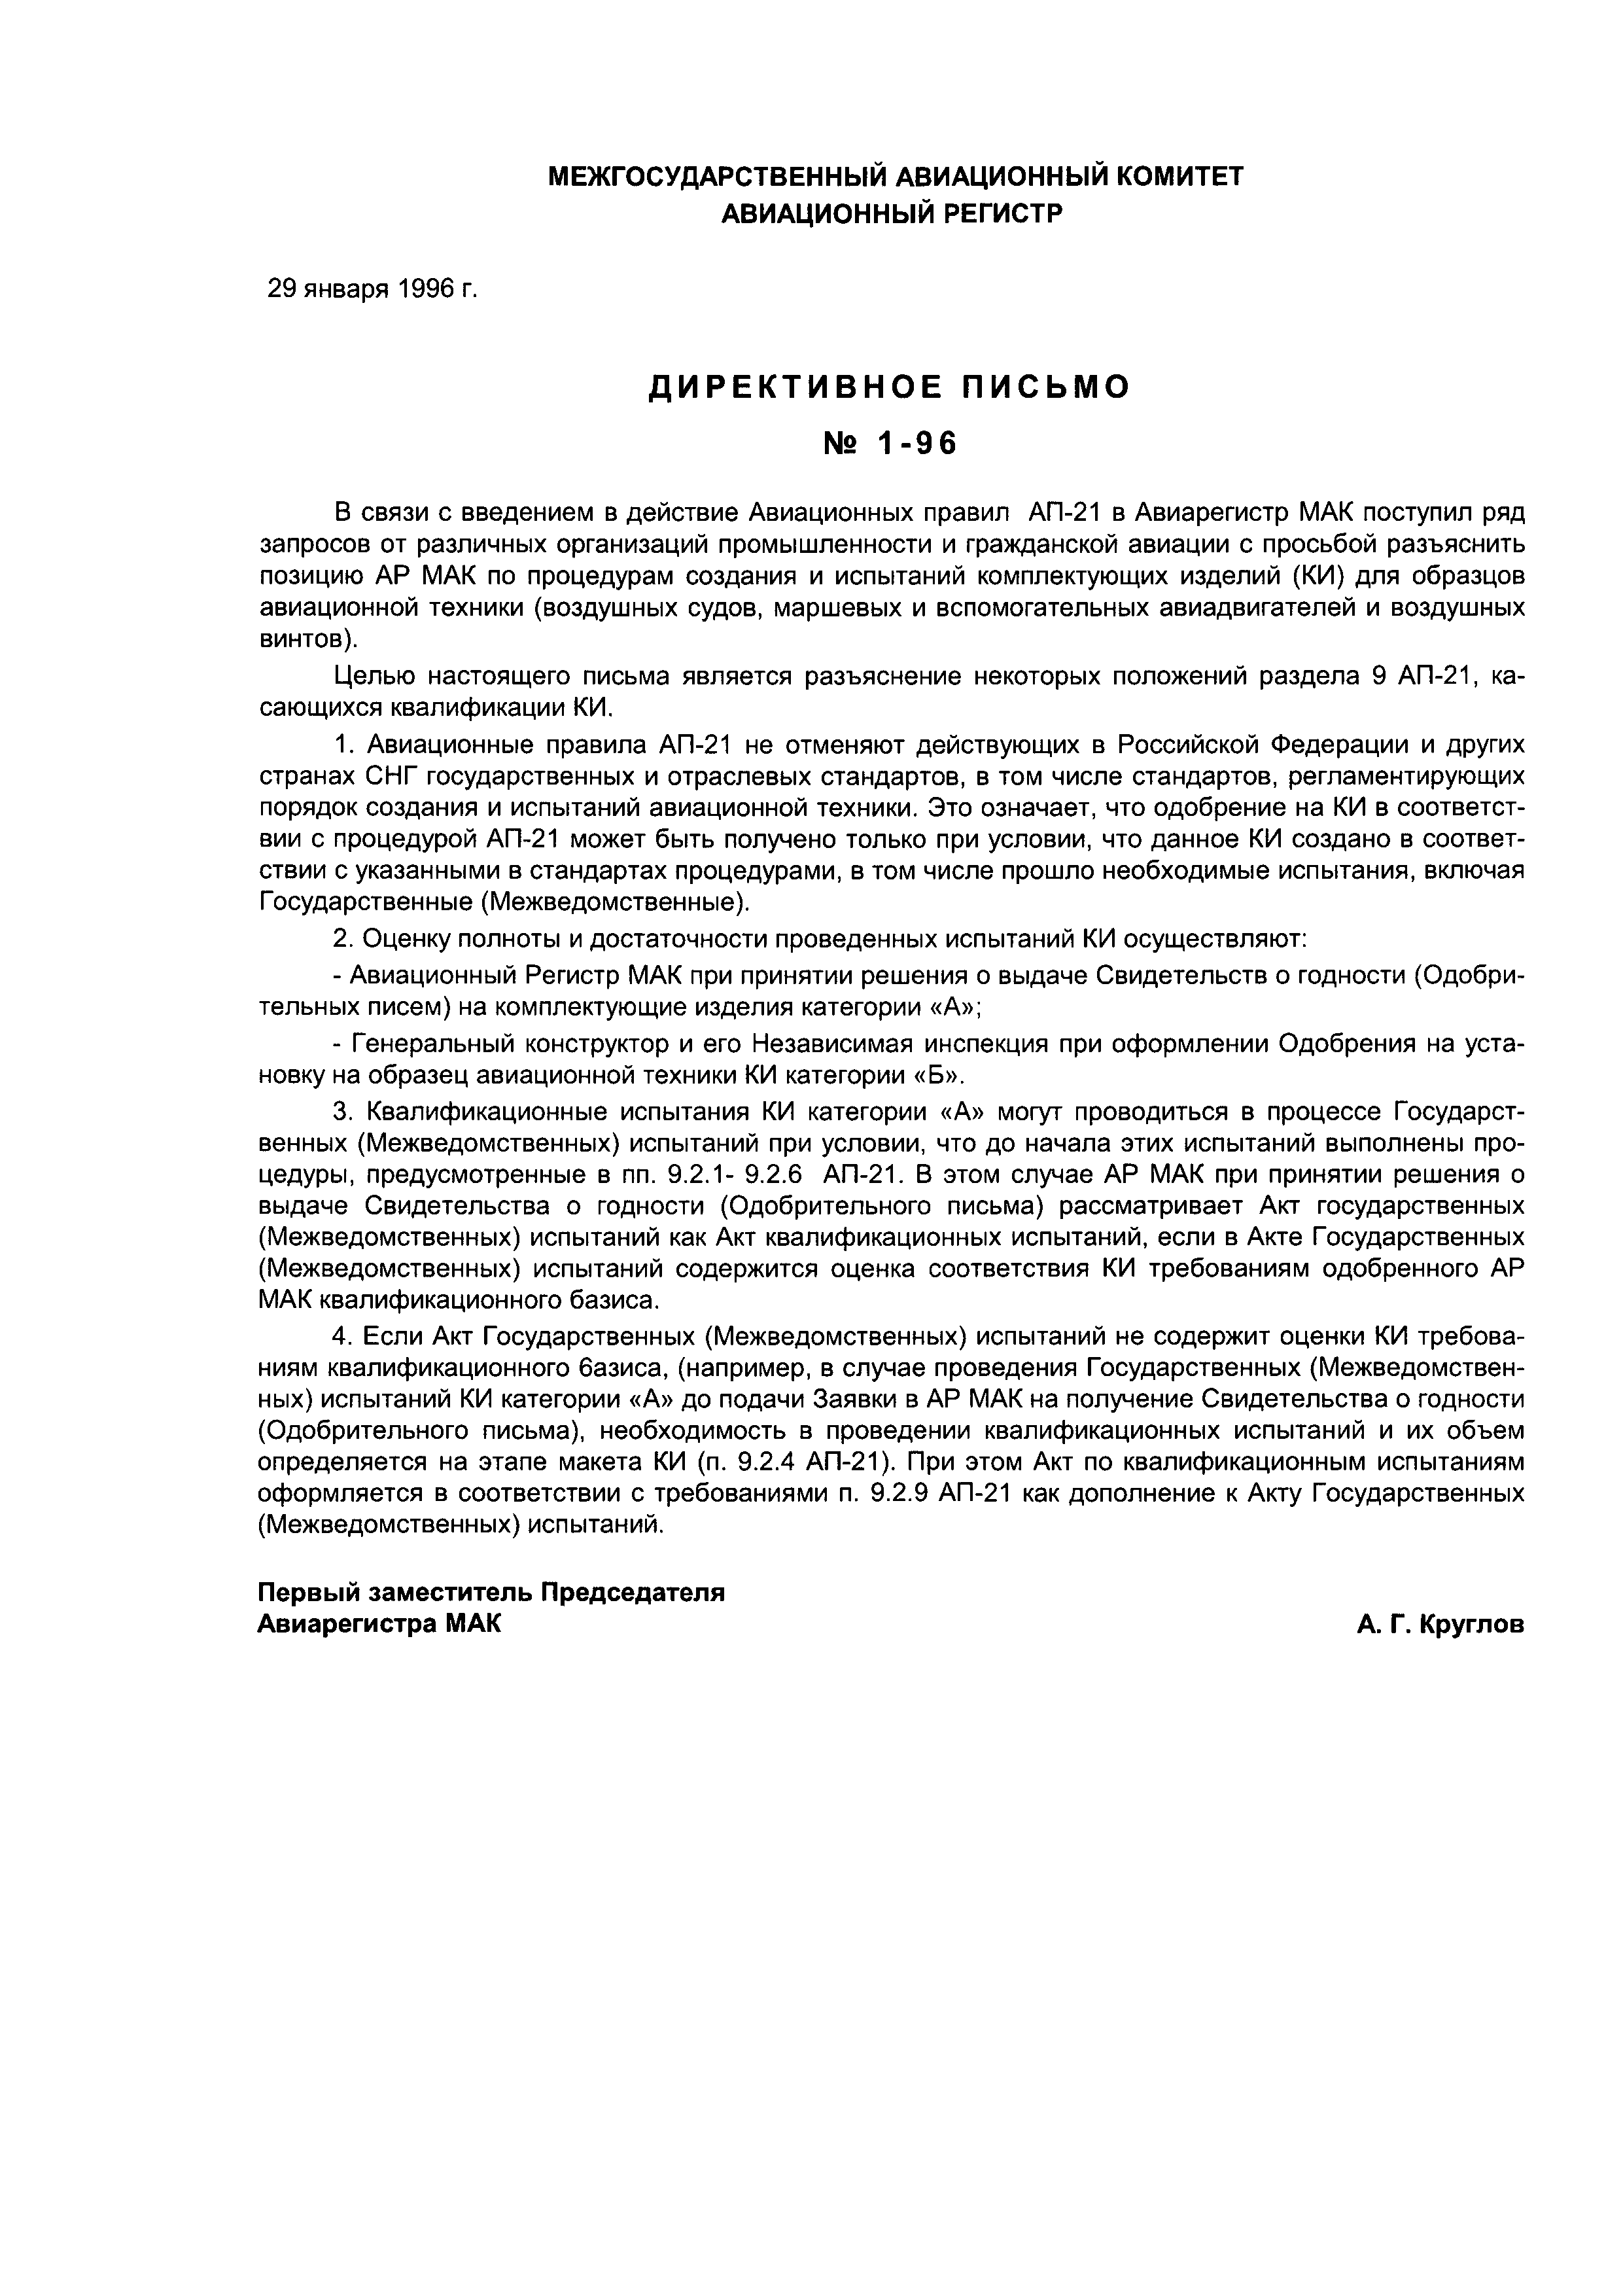 Директивное письмо 1-96